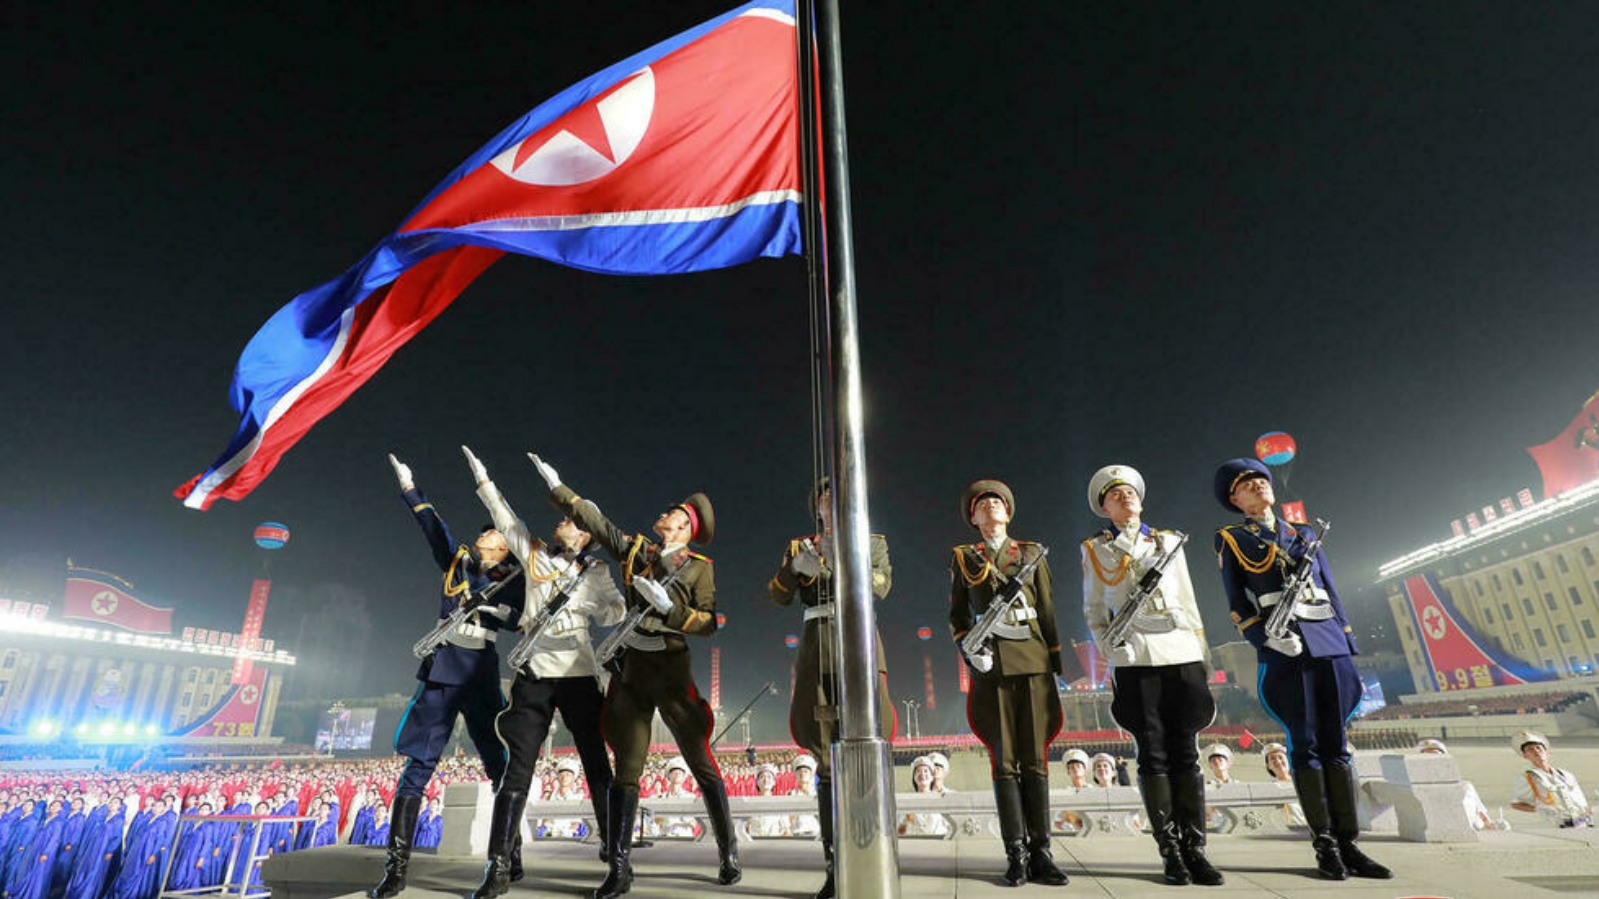 كوريا الشمالية احتفلت بالذكرى الـ 73 لتأسيسها باستعراض في وقت سابق من هذا الشهر في ساحة كيم إيل سونغ في بيونغ يانغ.